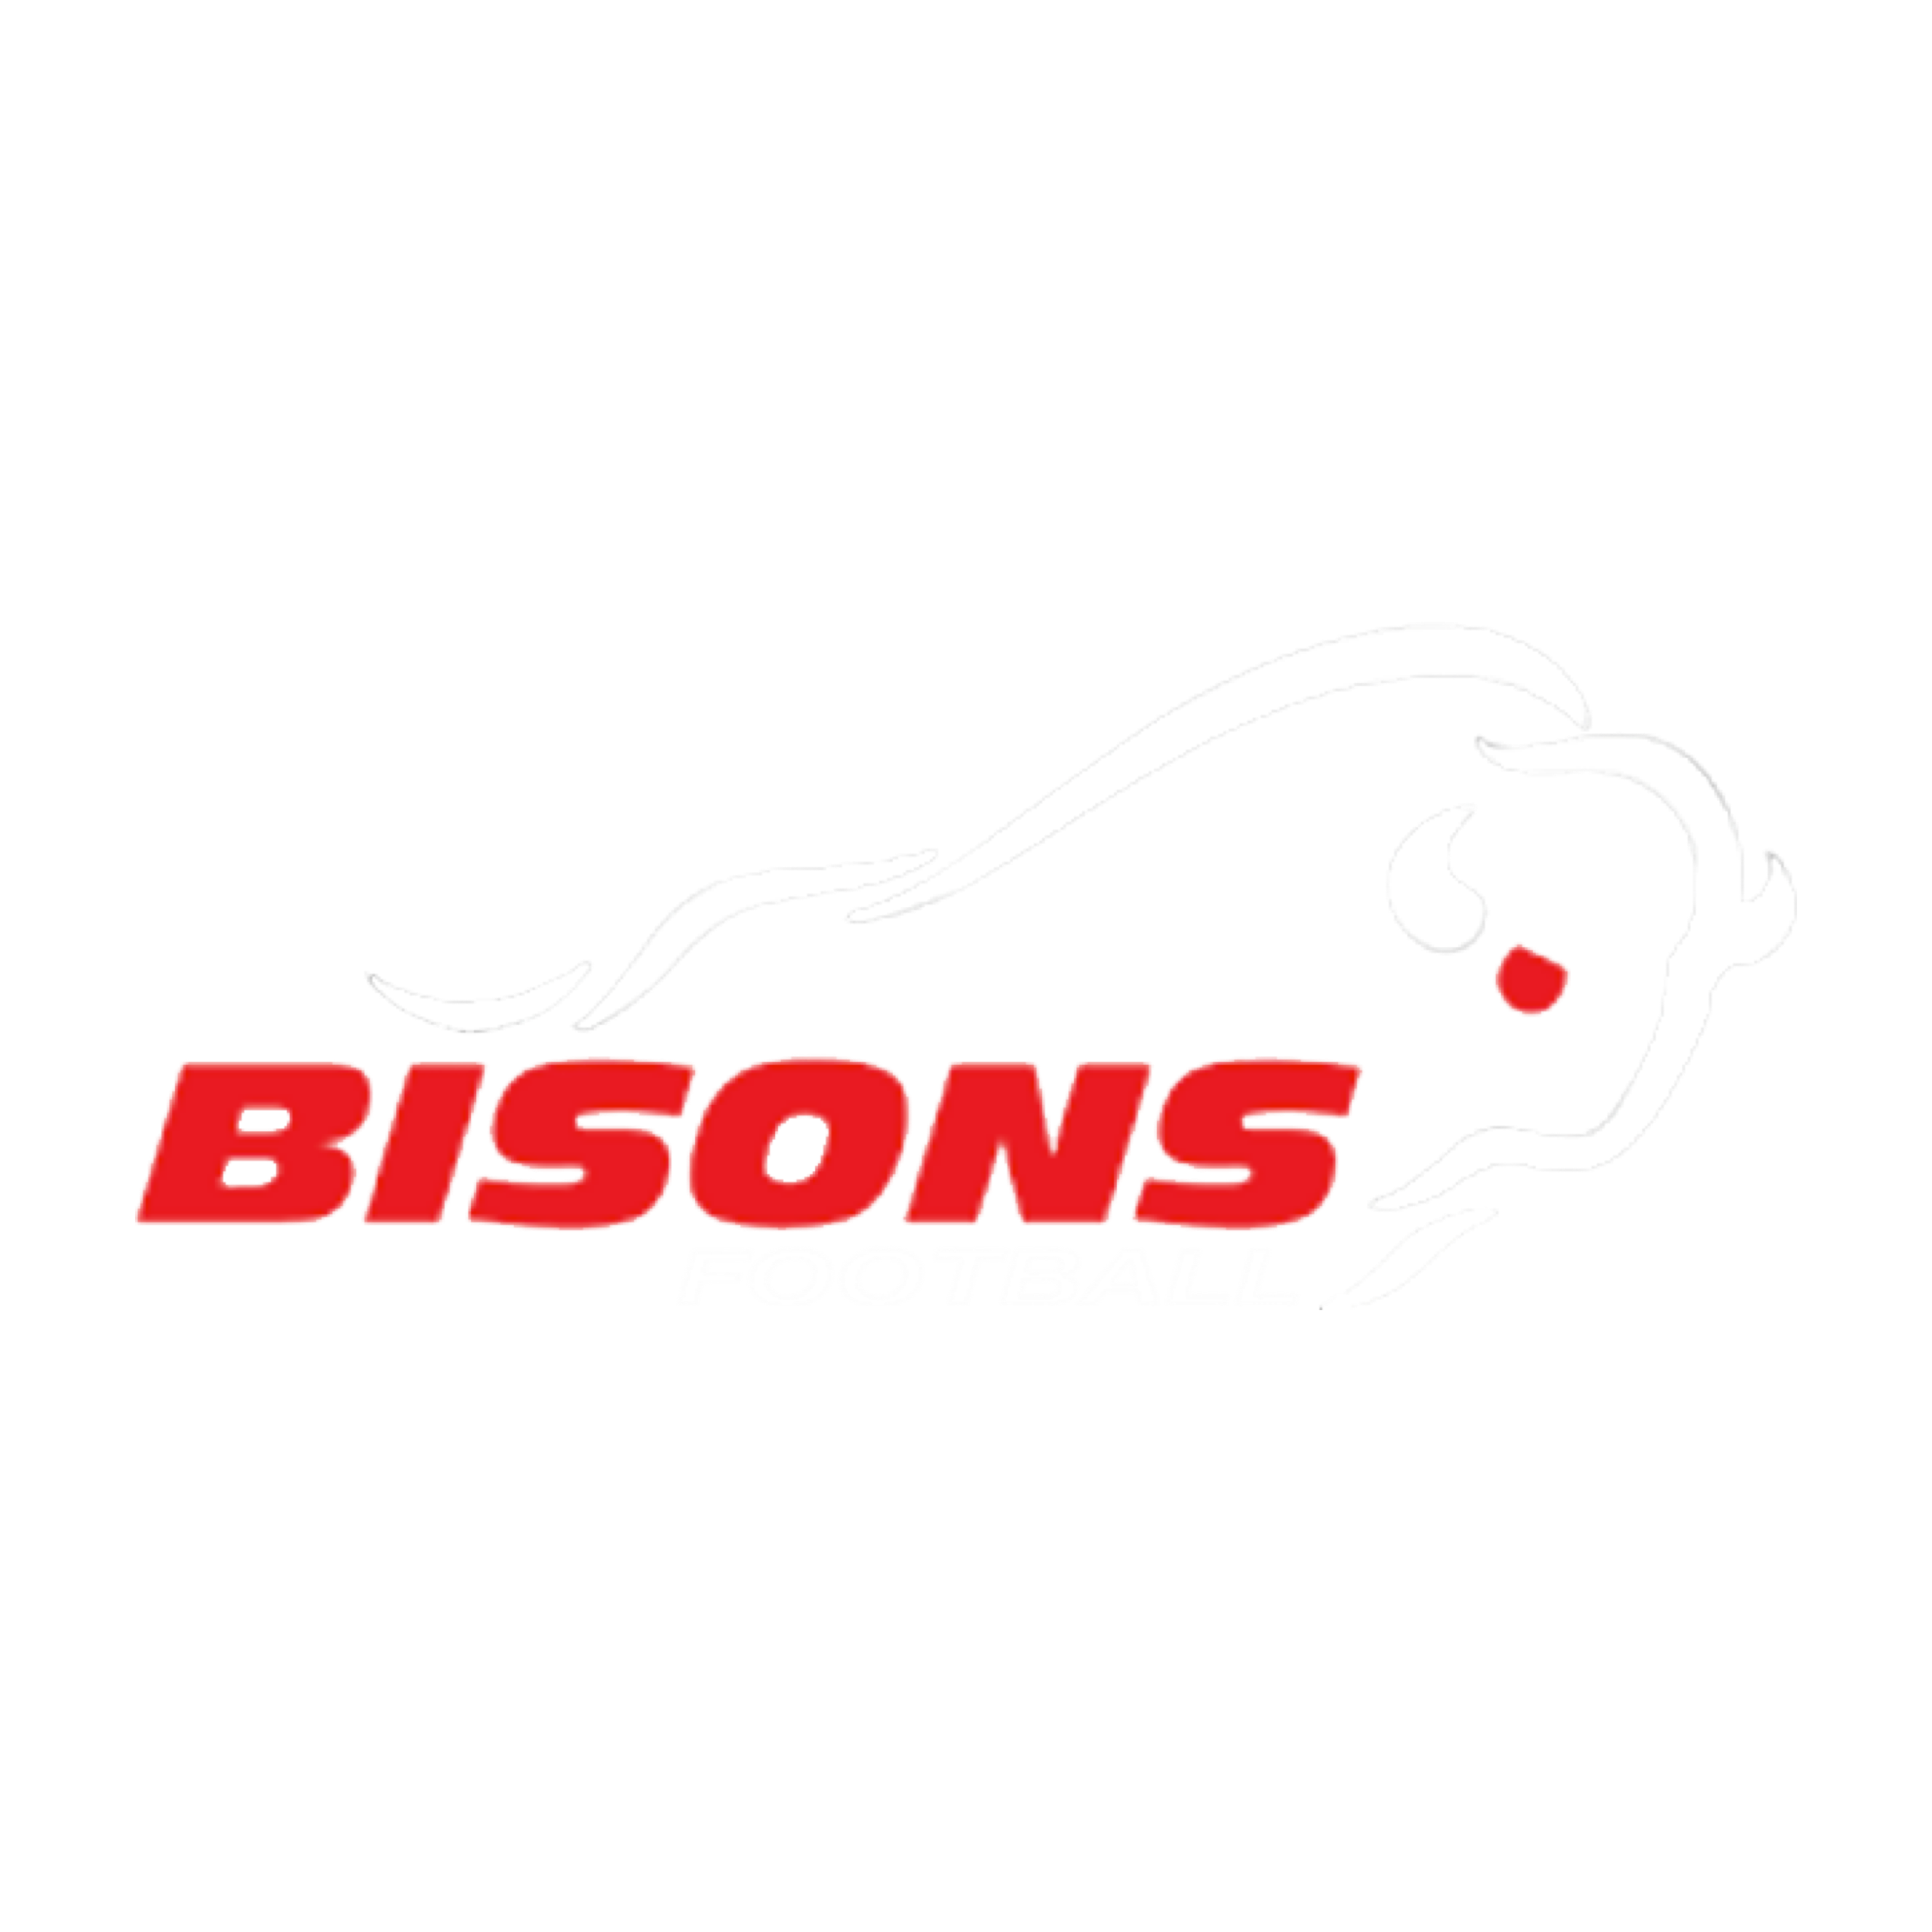 Brantford Bisons Football Logo